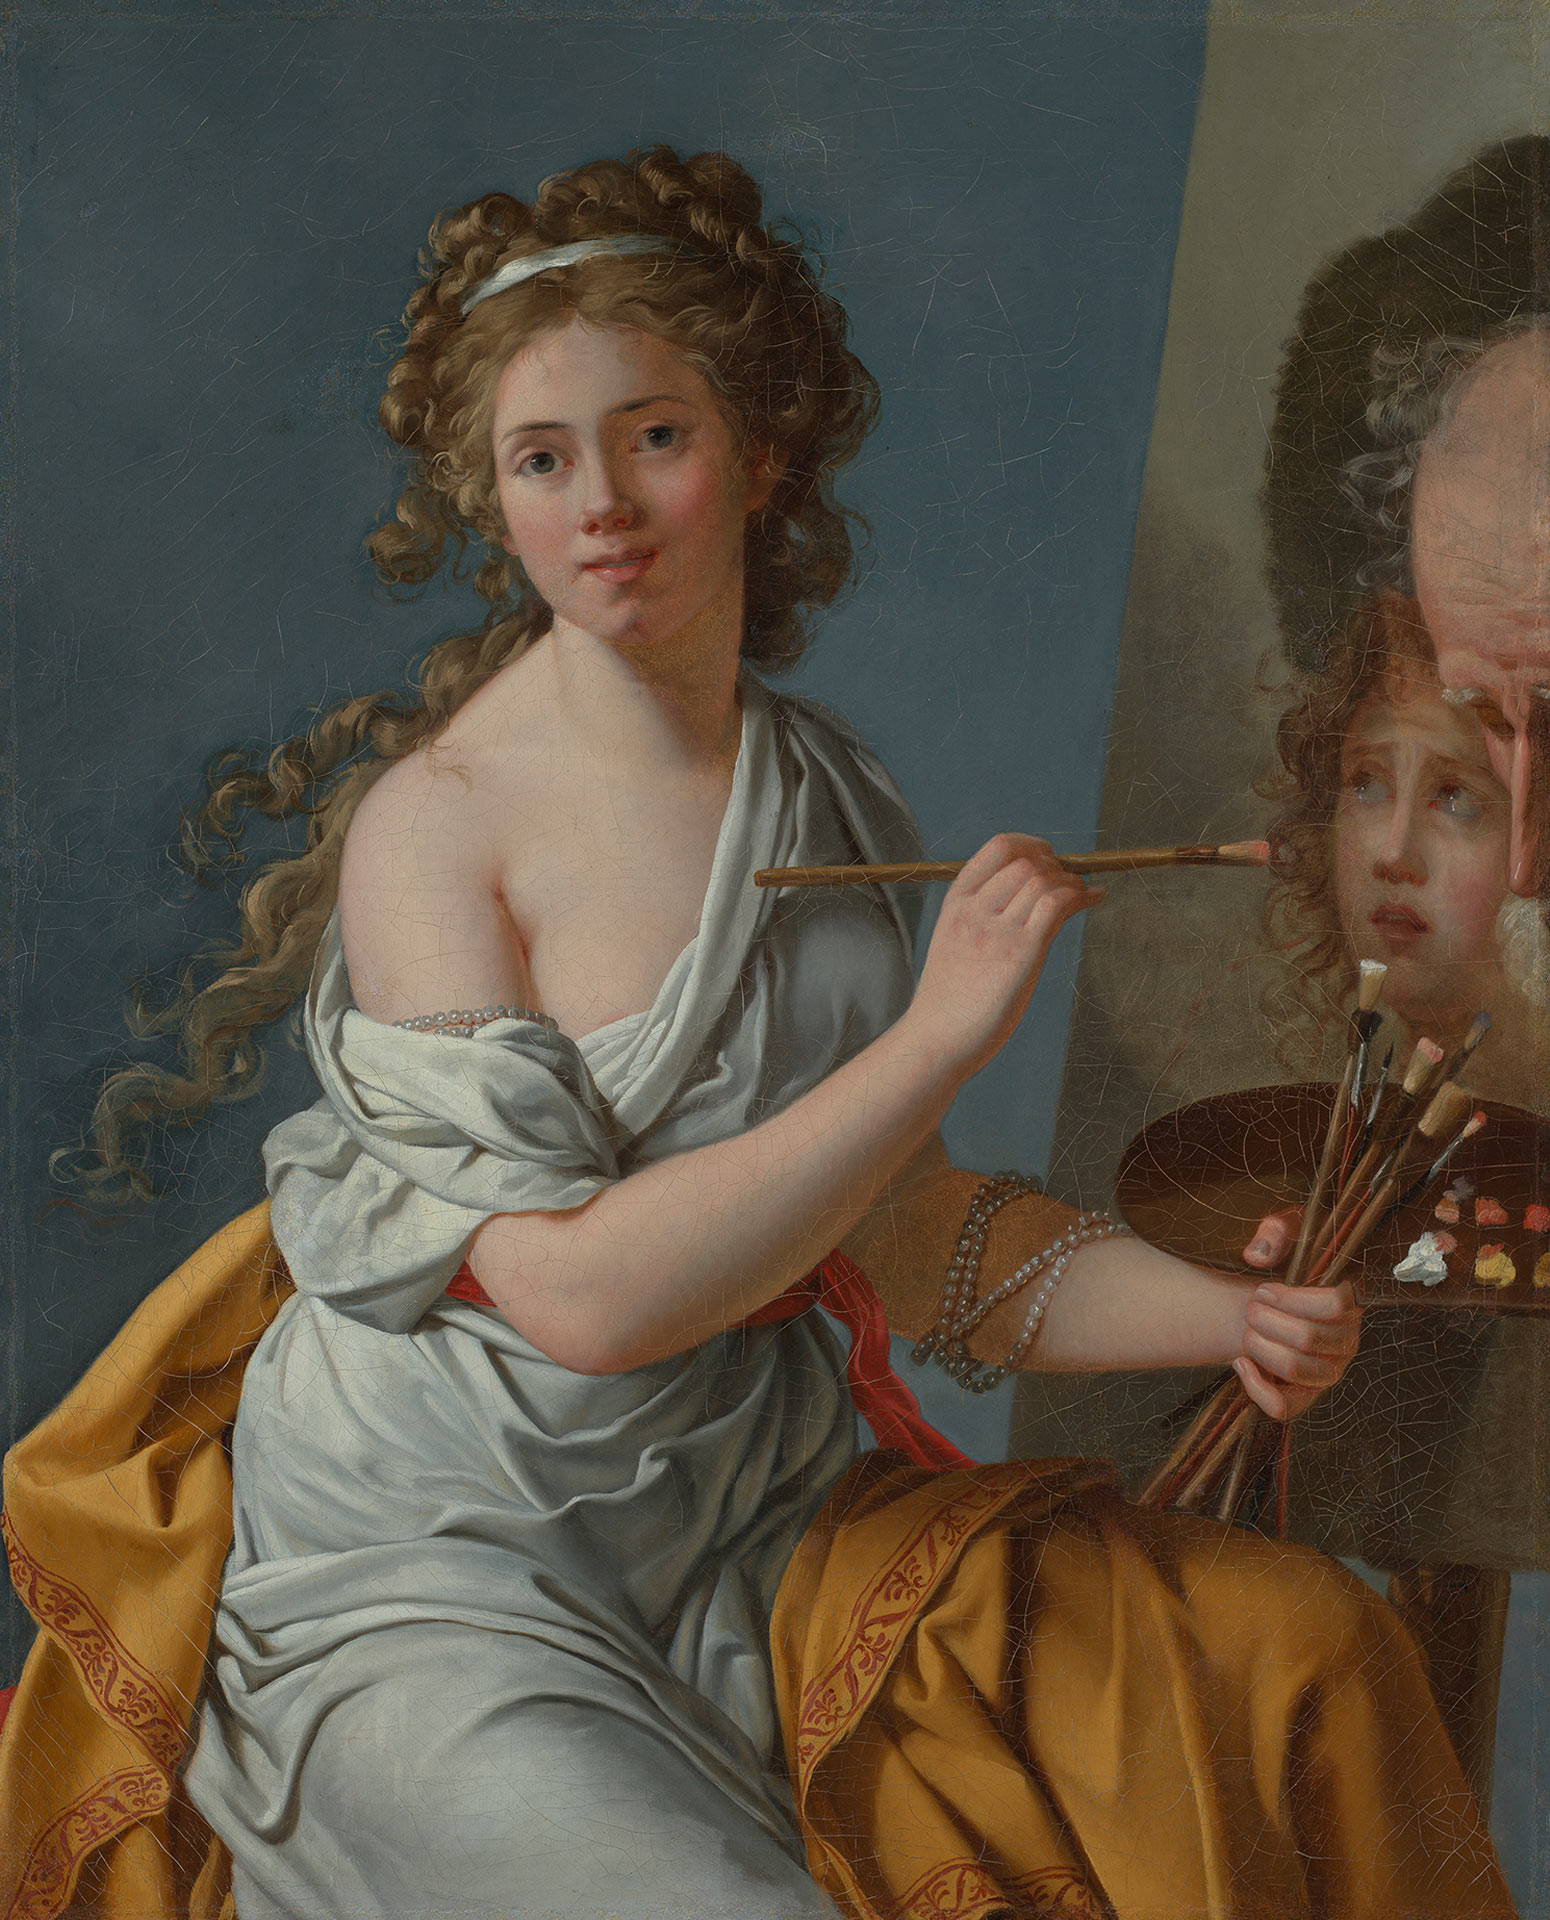 Abbildung des Selbstbildnisses von Marie-Guilhelmine Benoist, auf dem die Künstlerin mit lockigem Haar und wallender Kleidung in die Kamera blickt. Sie hält einen Pinsel in der Hand und sitzt vor einer Leinwand, auf der sie gerade an einem Gemälde arbeitet.